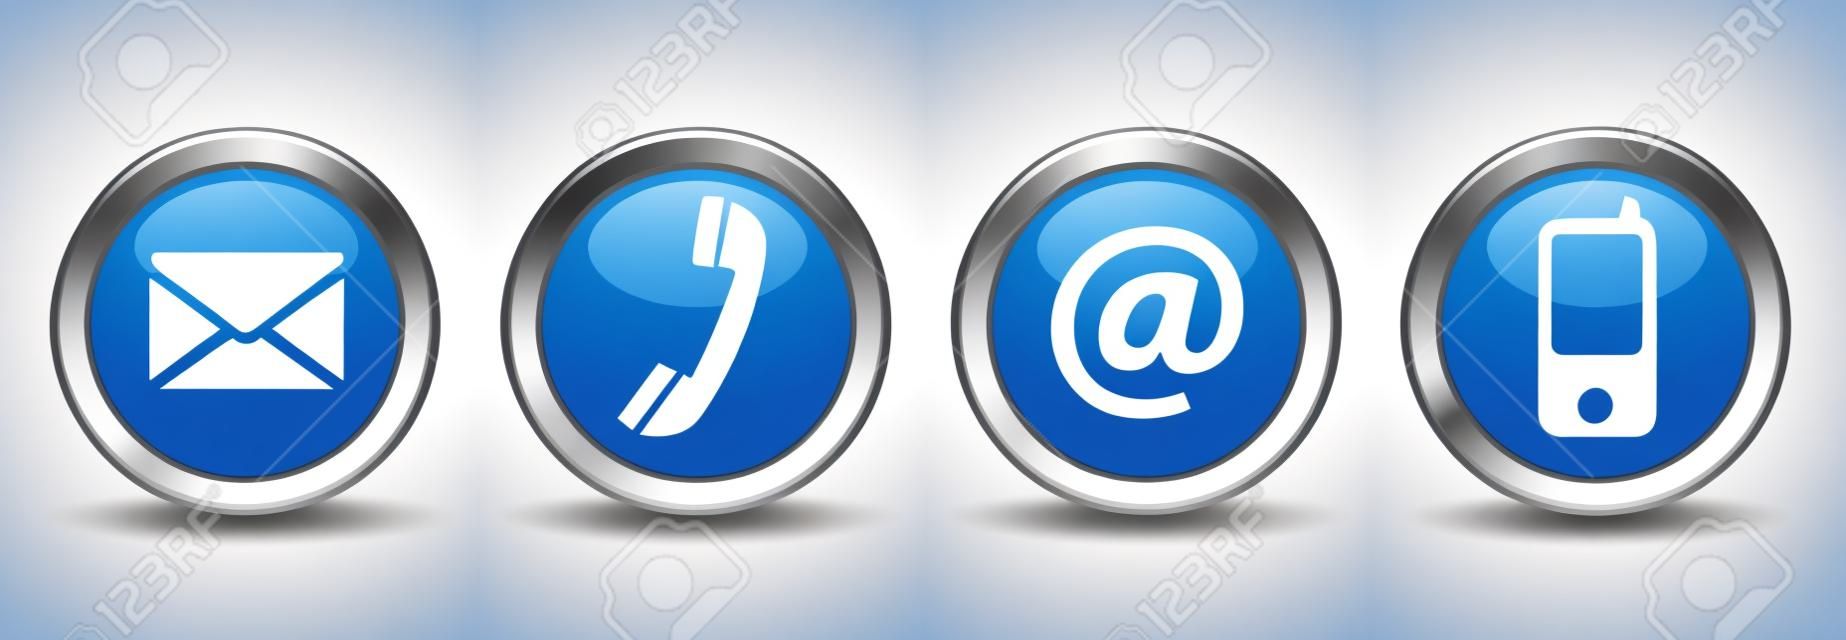 Skontaktuj się z nami internetowych przyciski zestaw z e-mail, na, telefon i ikony telefony na niebieskim srebrny znaczek wektor EPS 10 ilustracji na białym tle.